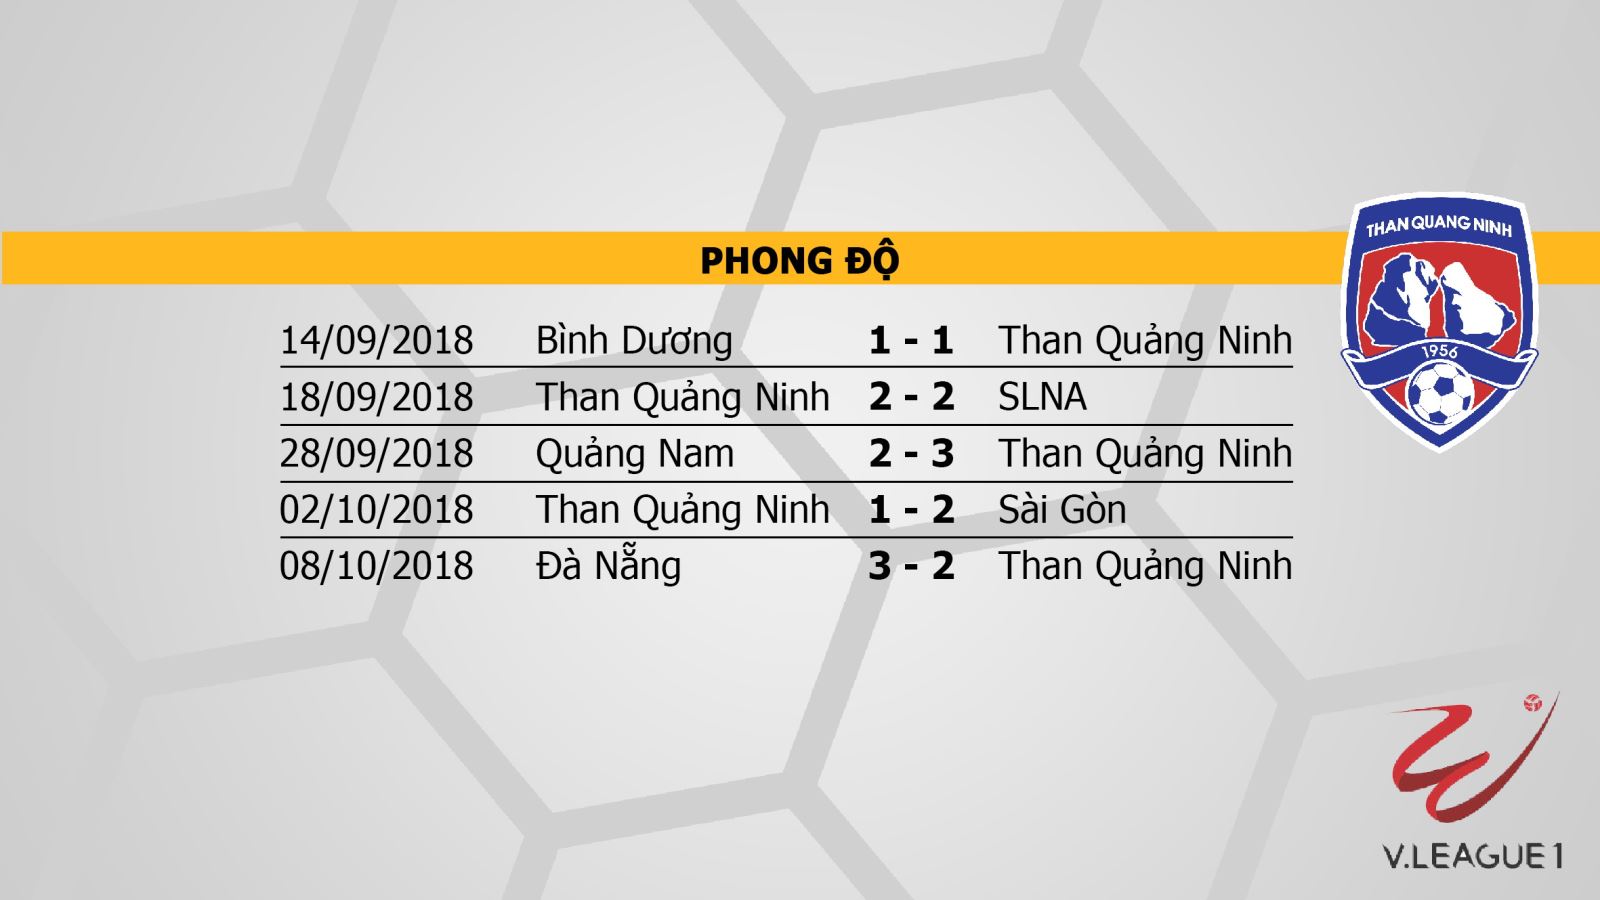 xem trực tiếp bóng đá Hà Nội vs Than Quảng Ninh, trực tiếp Hà Nội vs Than Quảng Ninh, trực tiếp bóng đá, link xem trực tiếp Hà Nội vs Than Quảng Ninh